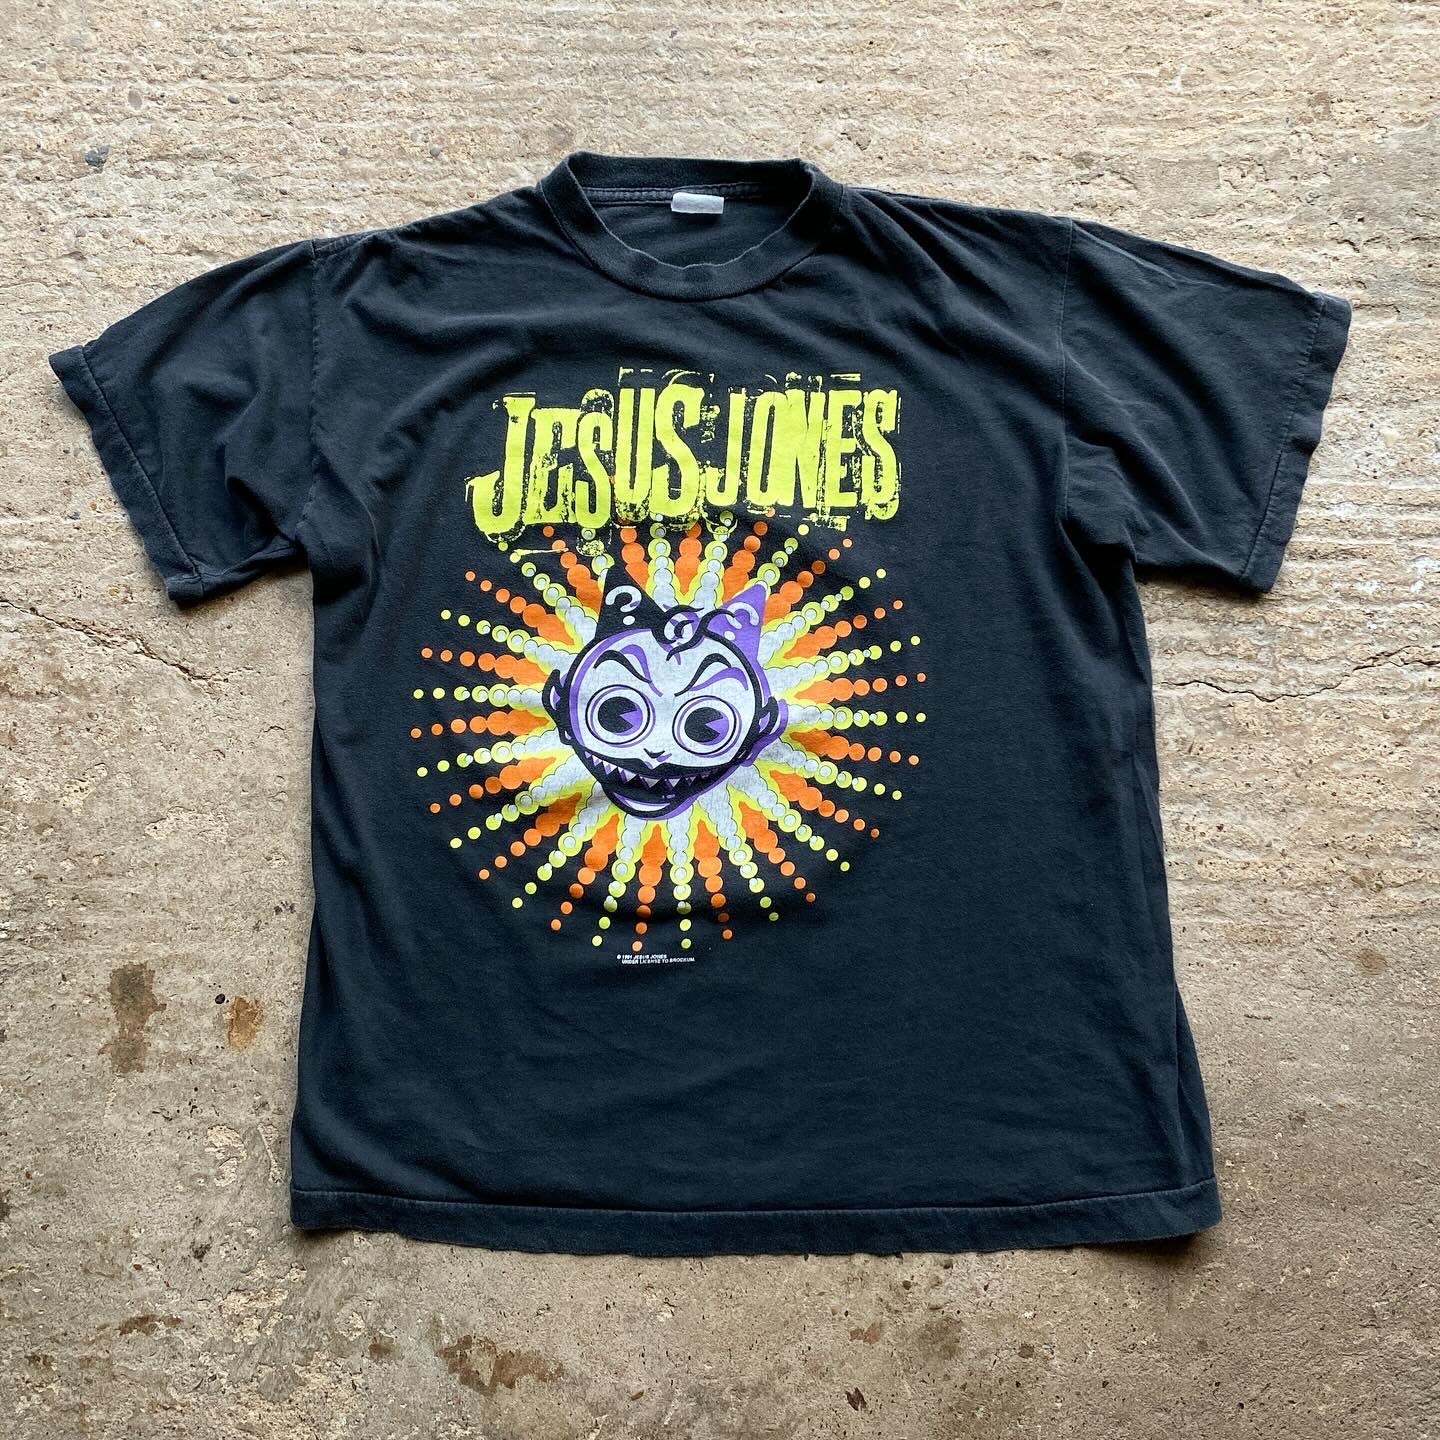 Jesus Jones - 'Doubt' - 1991 - L